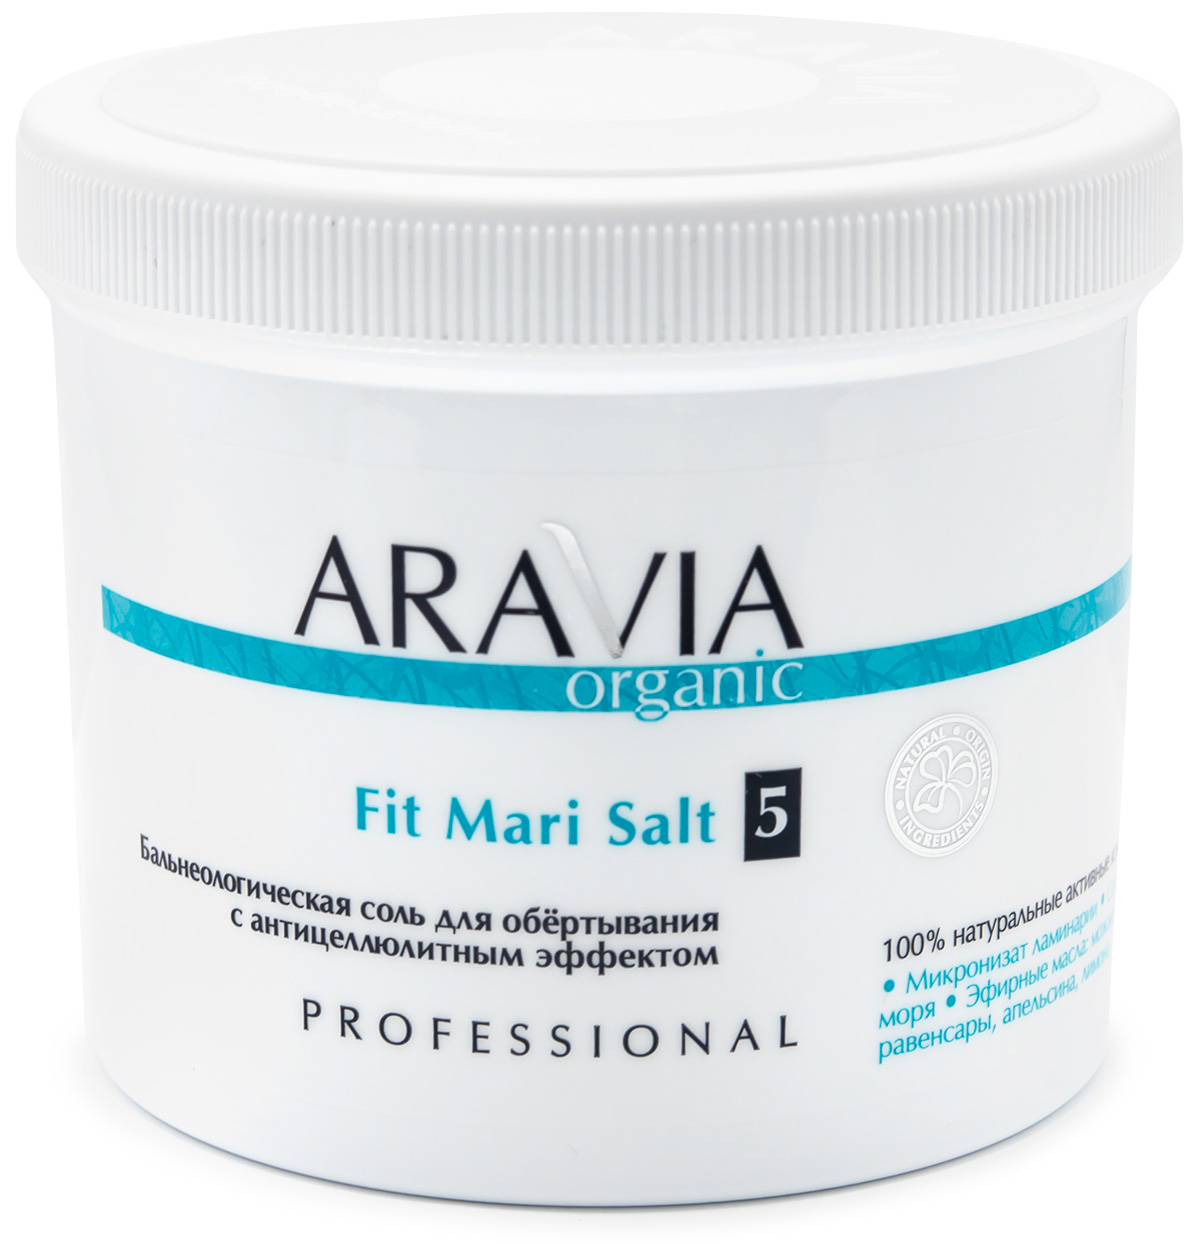 Aravia Professional Бальнеологическая соль для обёртывания с антицеллюлитным эффектом Fit Mari Salt, 730 г (Aravia Professional, Уход за телом) бальнеологическая соль для обертывания с антицеллюлитным эффектом organic fit mari salt 730г